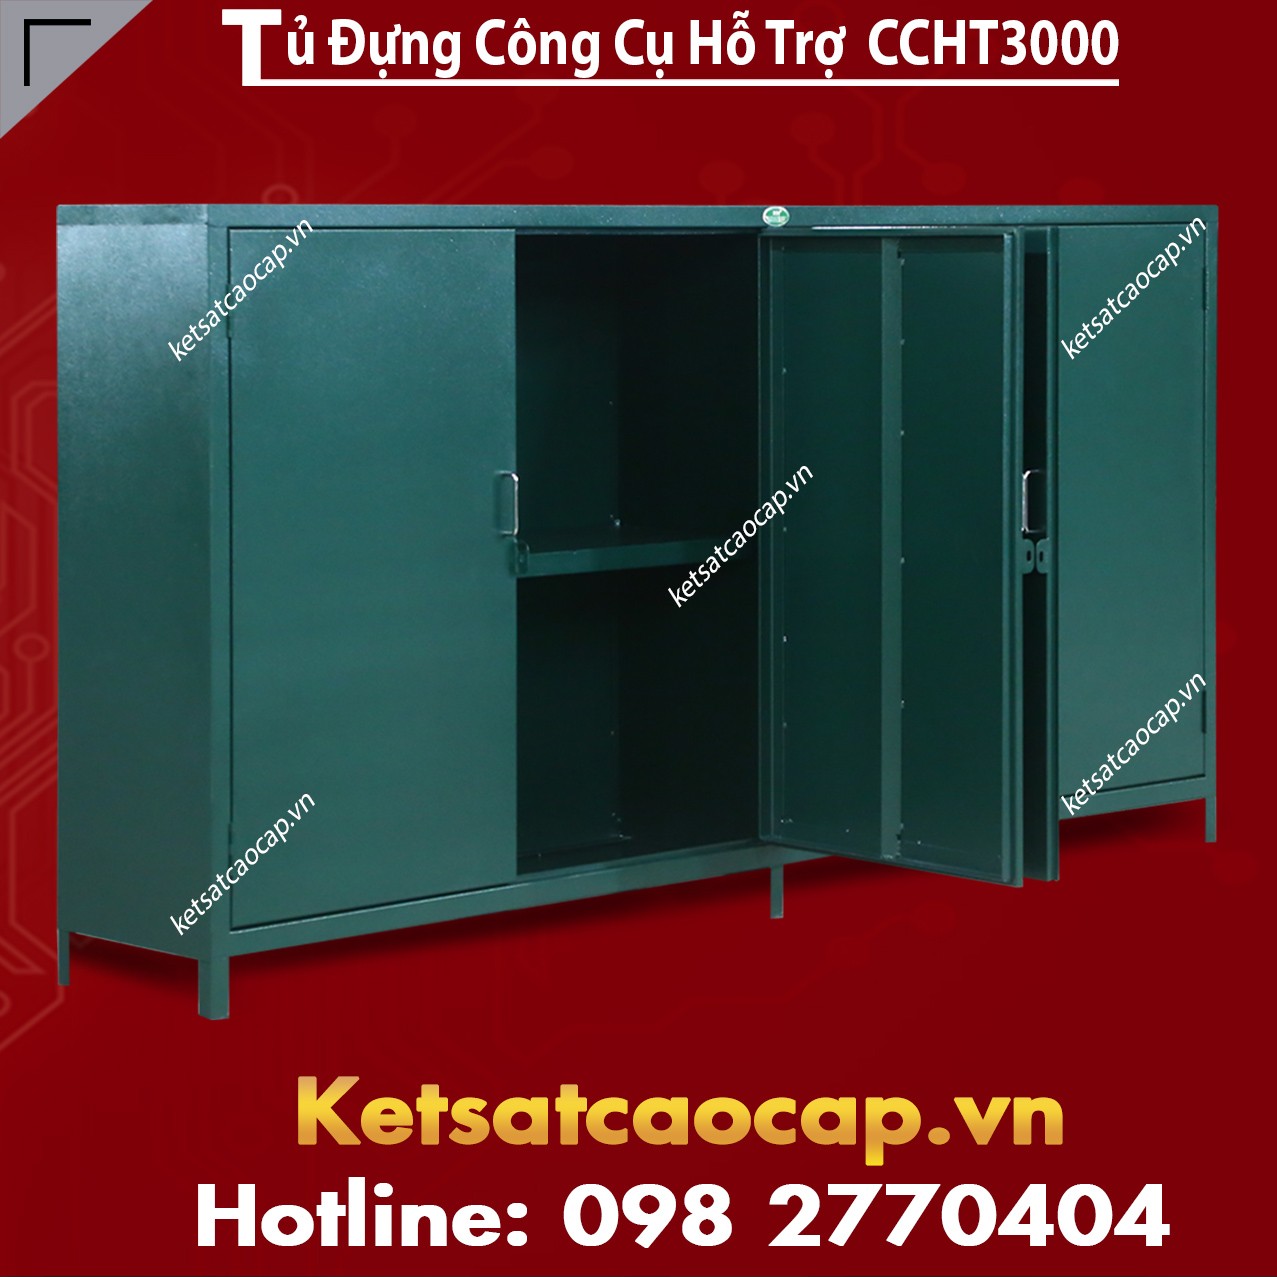 Tu Dung Cong Cu Ho Tro CCHT3000